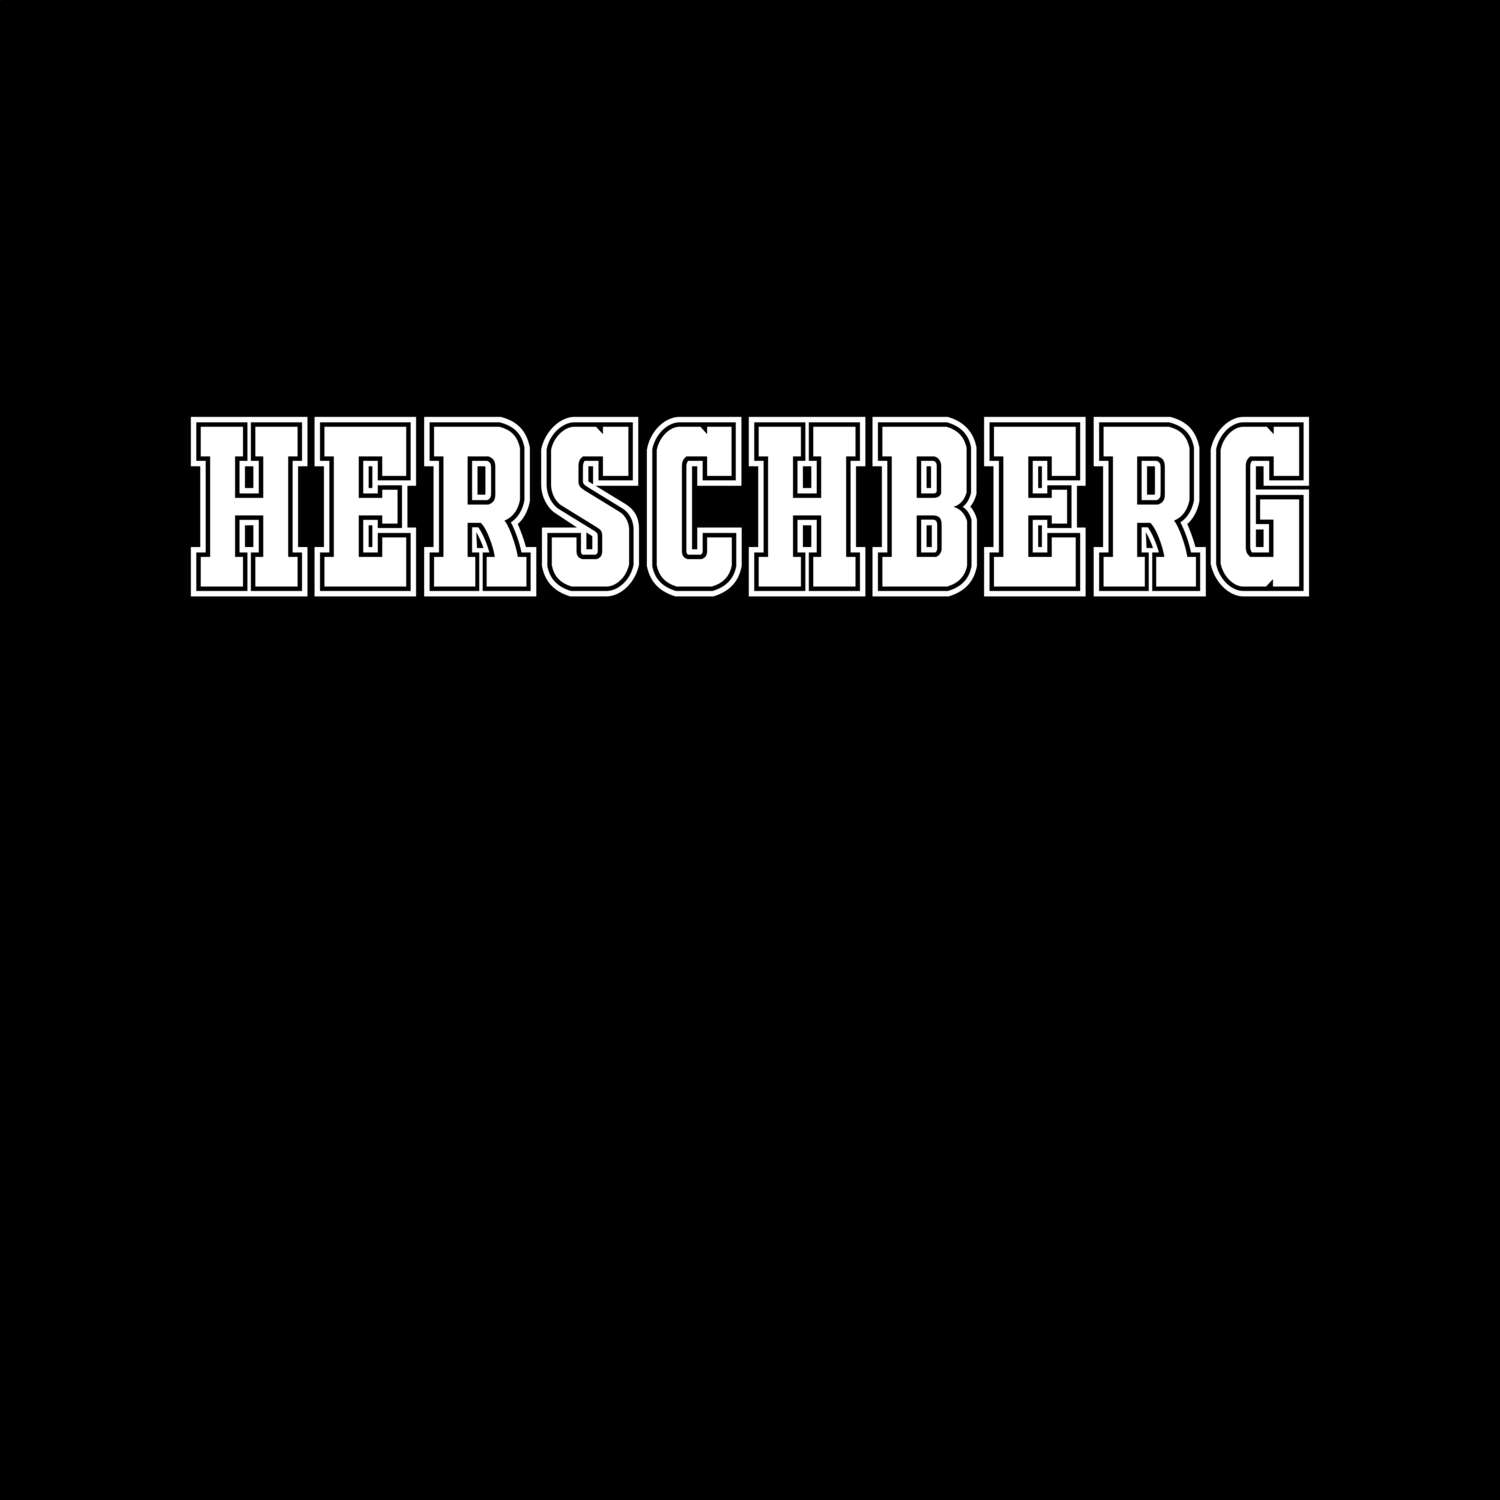 Herschberg T-Shirt »Classic«